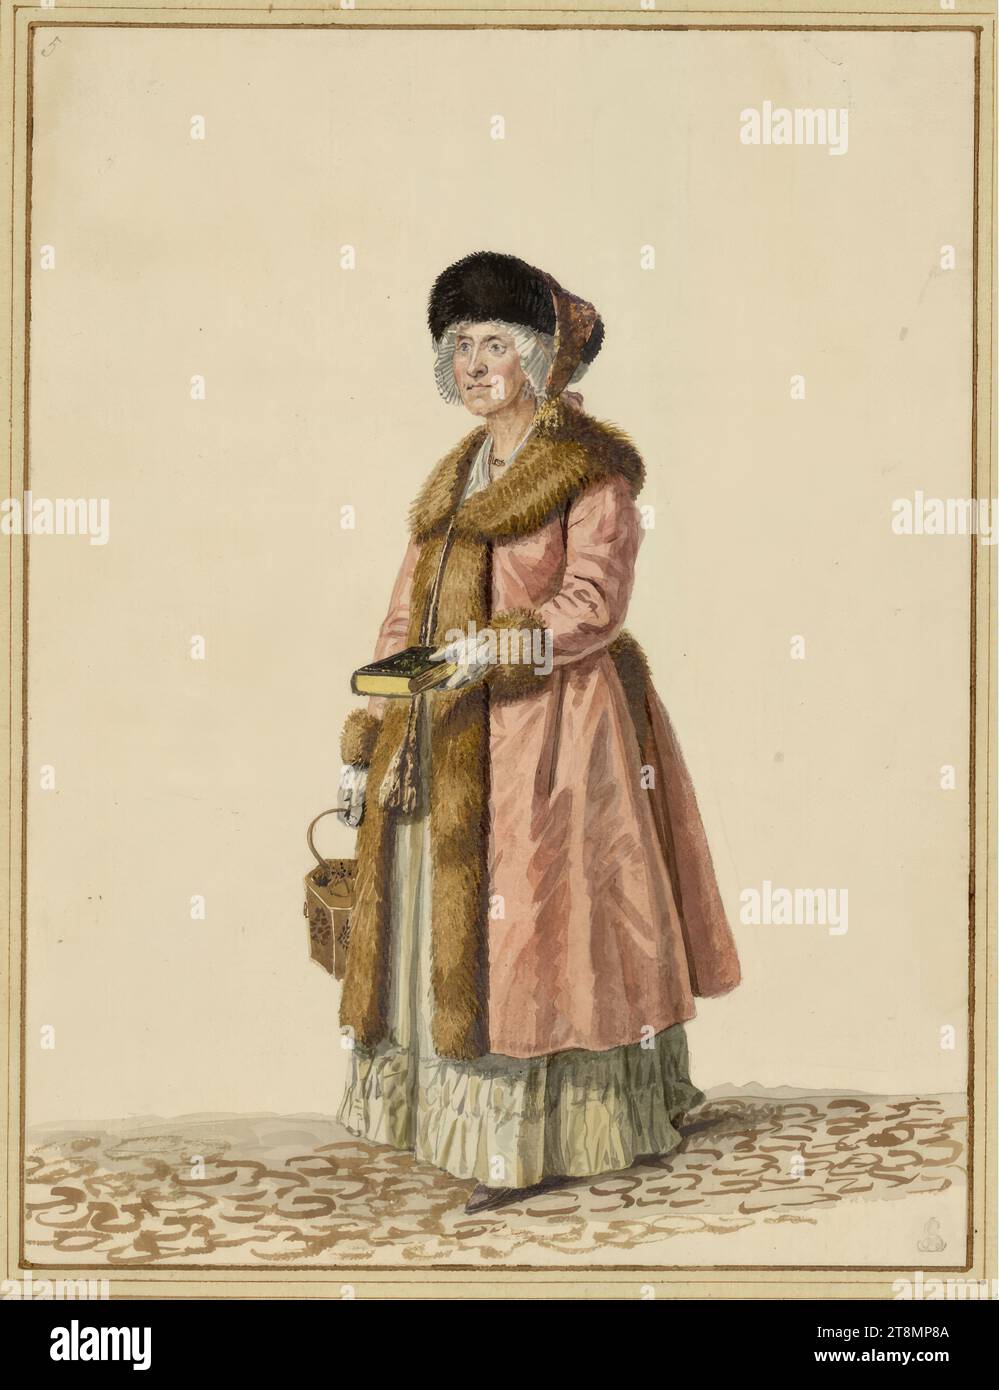 Bürgersfrau zu Dresden in Winterkleidung", Samuel Gränicher (Zofingen (Bern) 1758 - 1813 Dresden), 1806-07, Zeichnung, Aquarell, über Bleistiftspuren; teilweise glänzende Erhöhung, 22,3 x 16,9 cm, r. r. Herzog Albrecht von Sachsen-Teschen, l.o. '5 Stockfoto